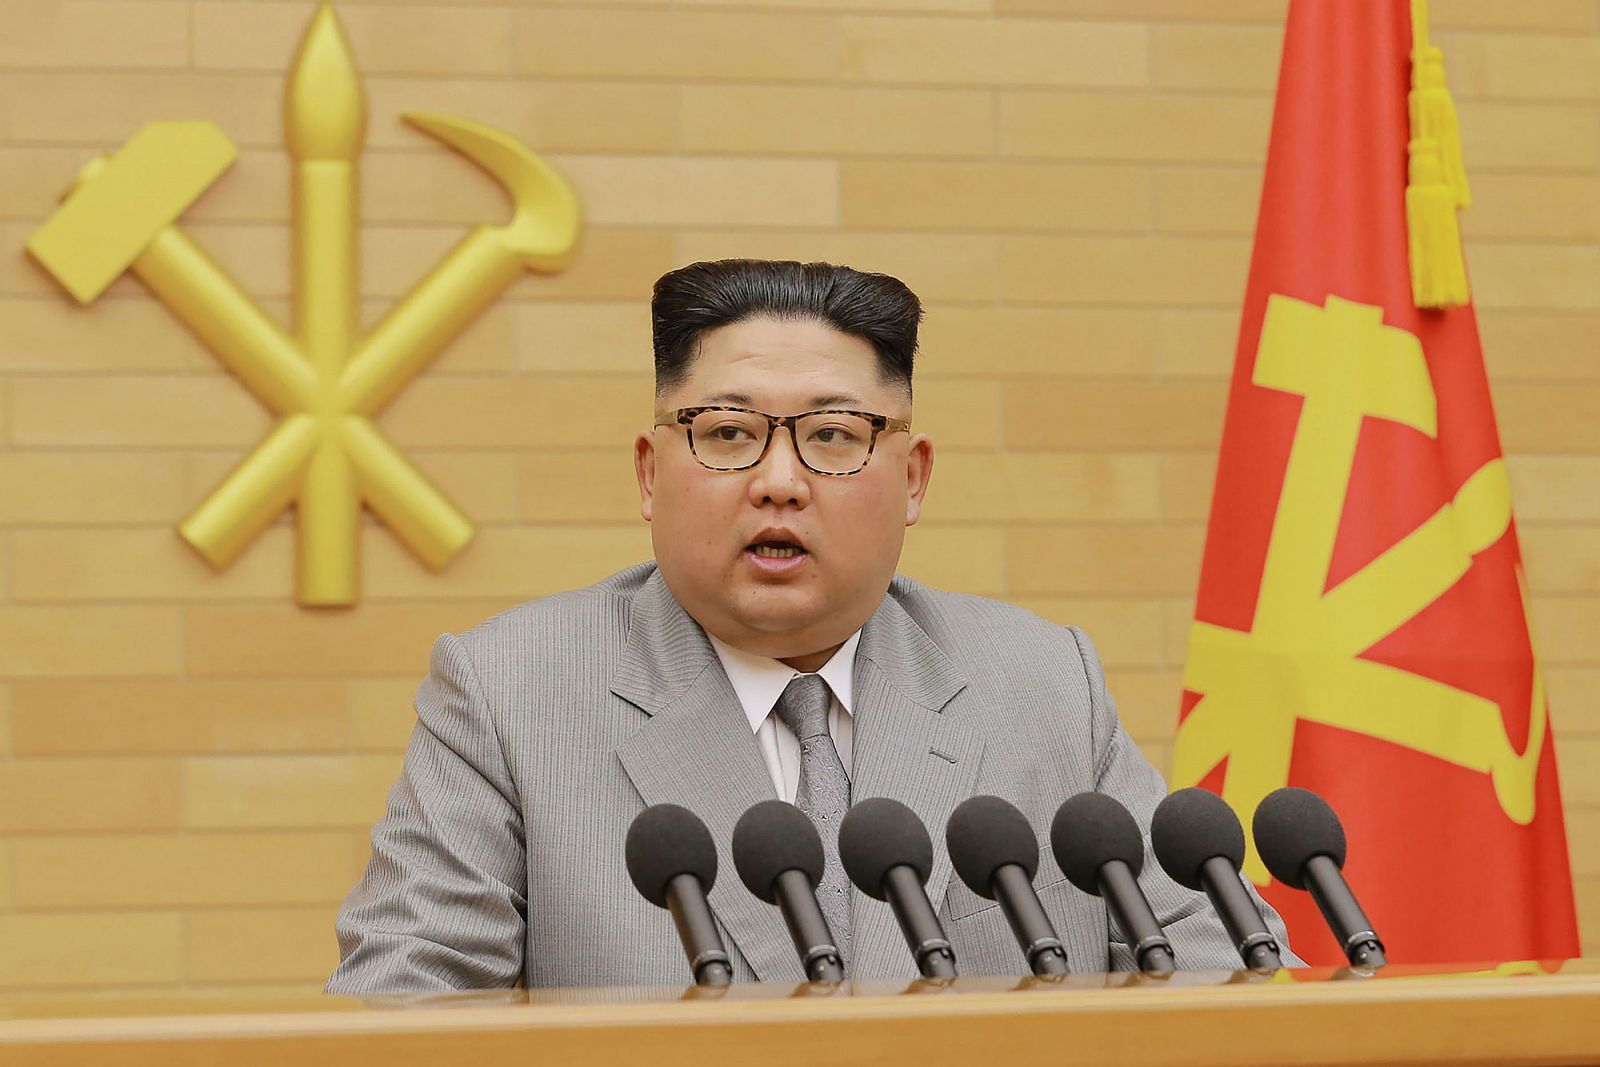 El líder norcoreano Kim Jong Un pronuncia el discurso de año nuevo para 2018